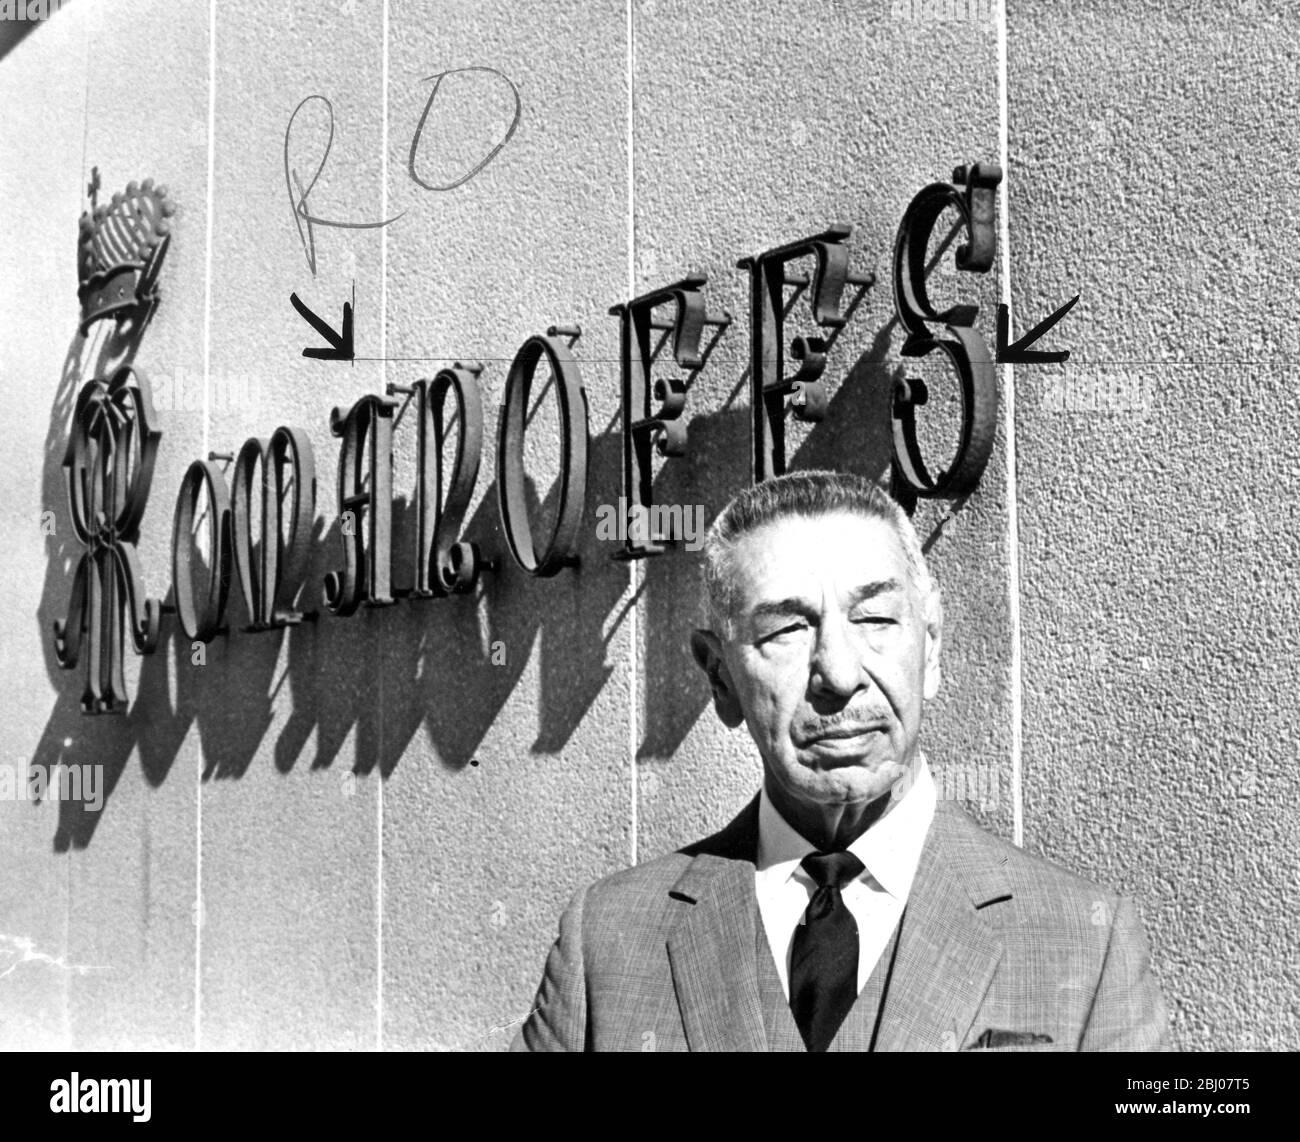 Das Restaurant Mike Ramanoff wird vor seinem exklusiven Restaurant Romanoff's gezeigt. - 27. Dezember 1962 Stockfoto